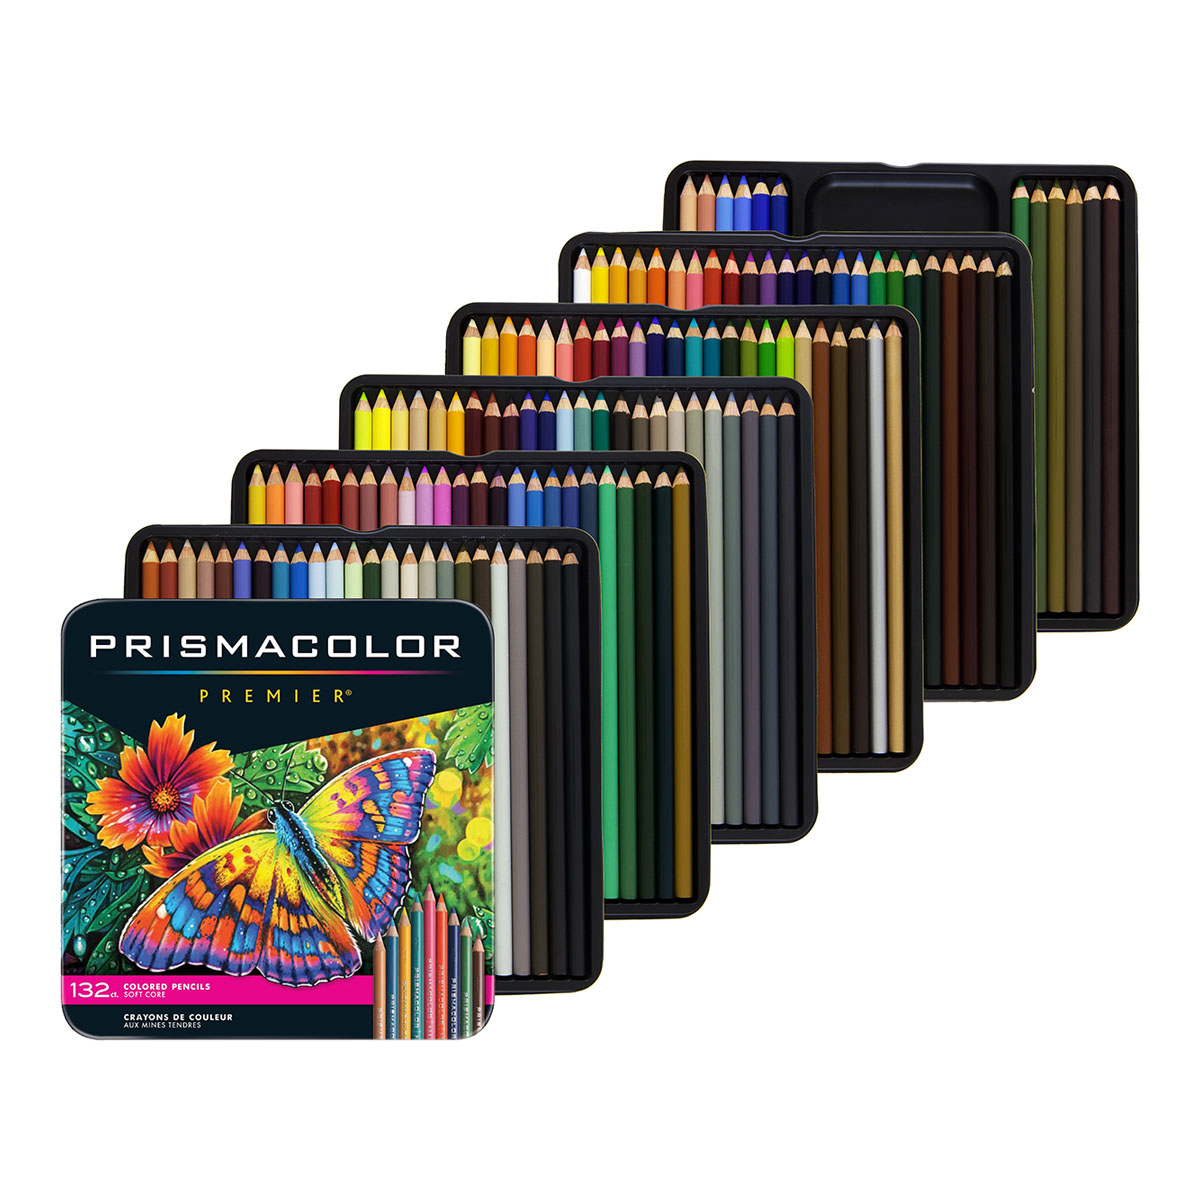 Prismacolor Colored Pencils 132 / set